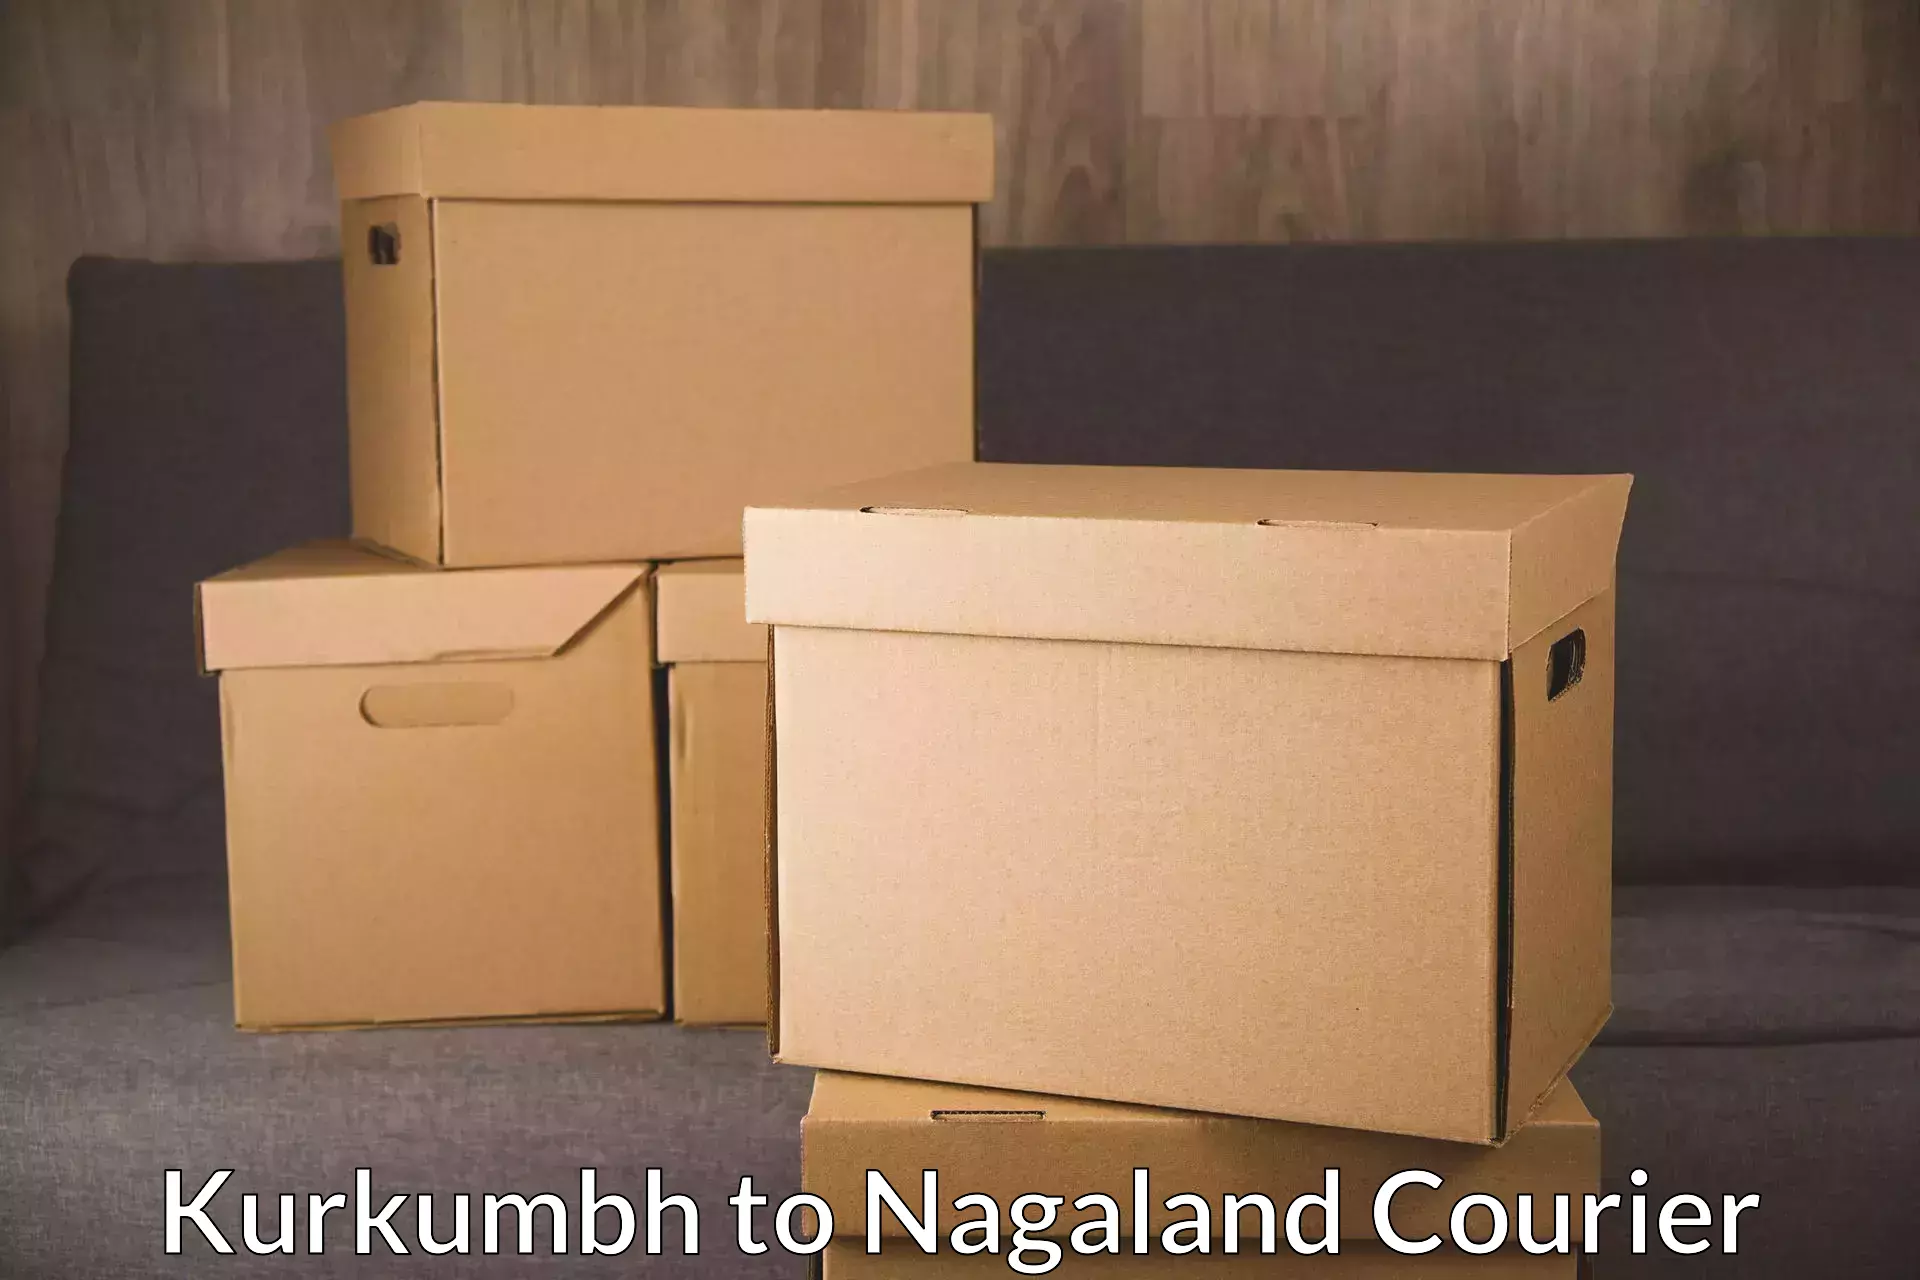 Full-service courier options Kurkumbh to Chumukedima